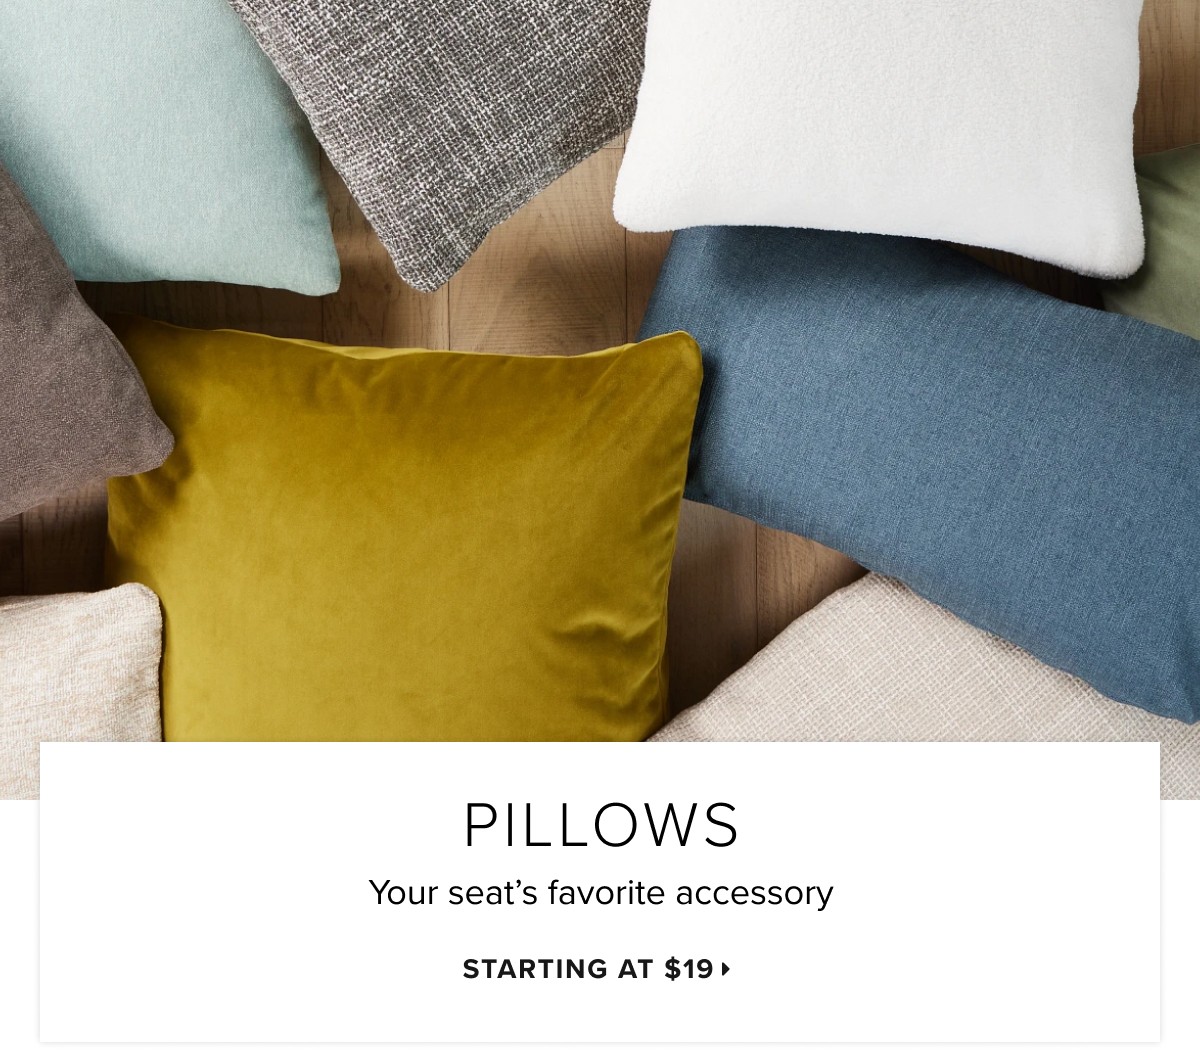 Pillows starting at $19 >